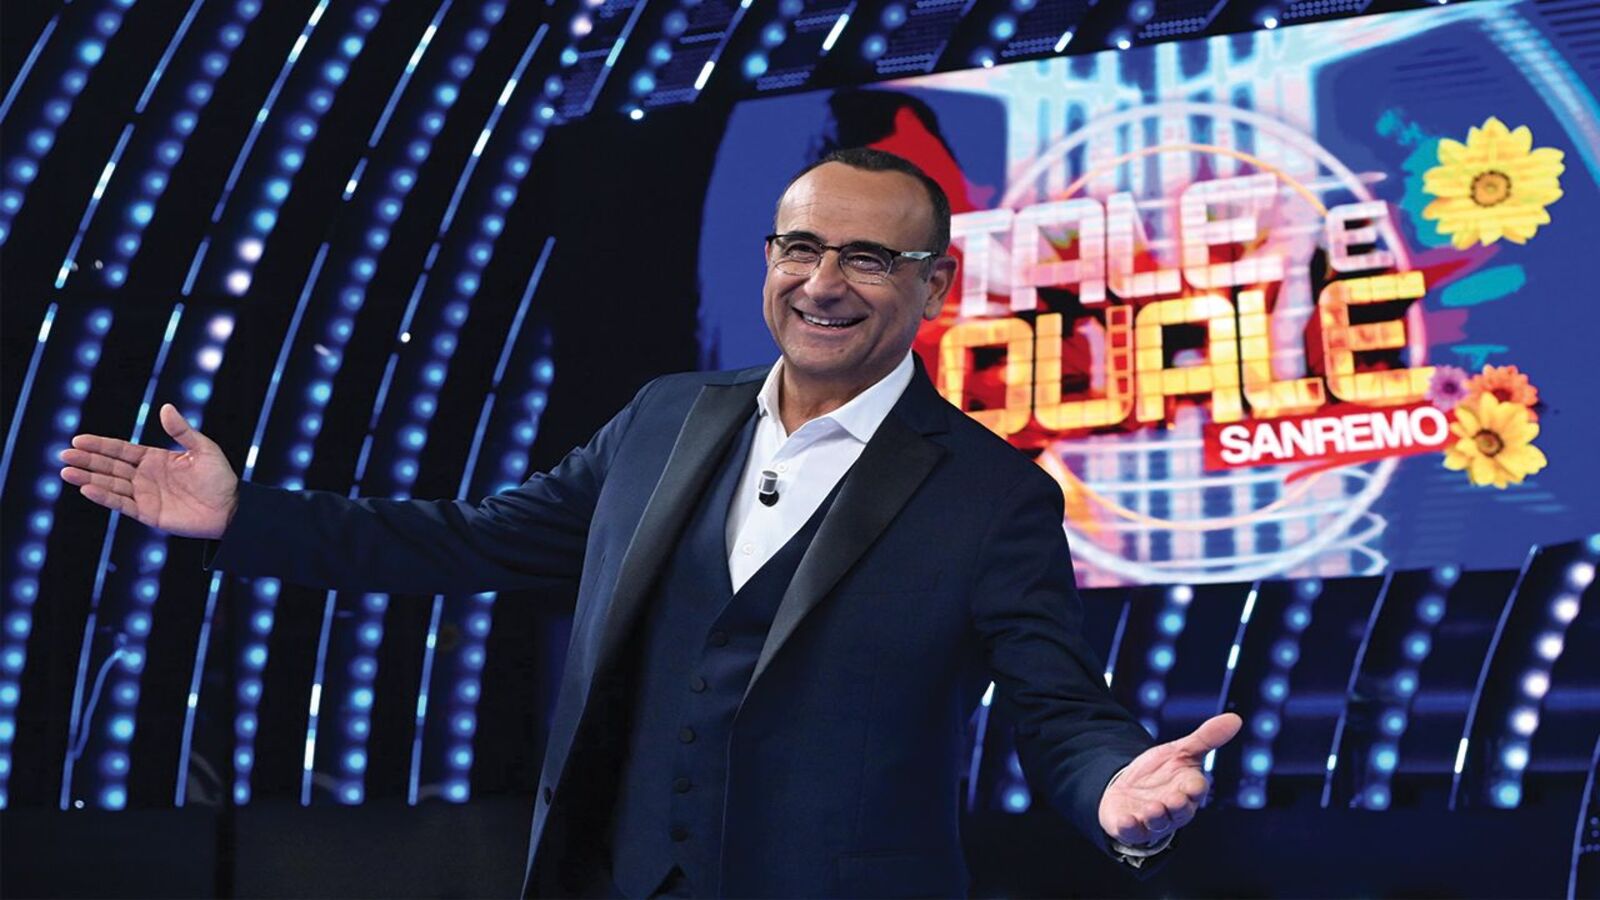 Tale e Quale Sanremo stasera su Rai 1: concorrenti e giuria dello show di Carlo Conti